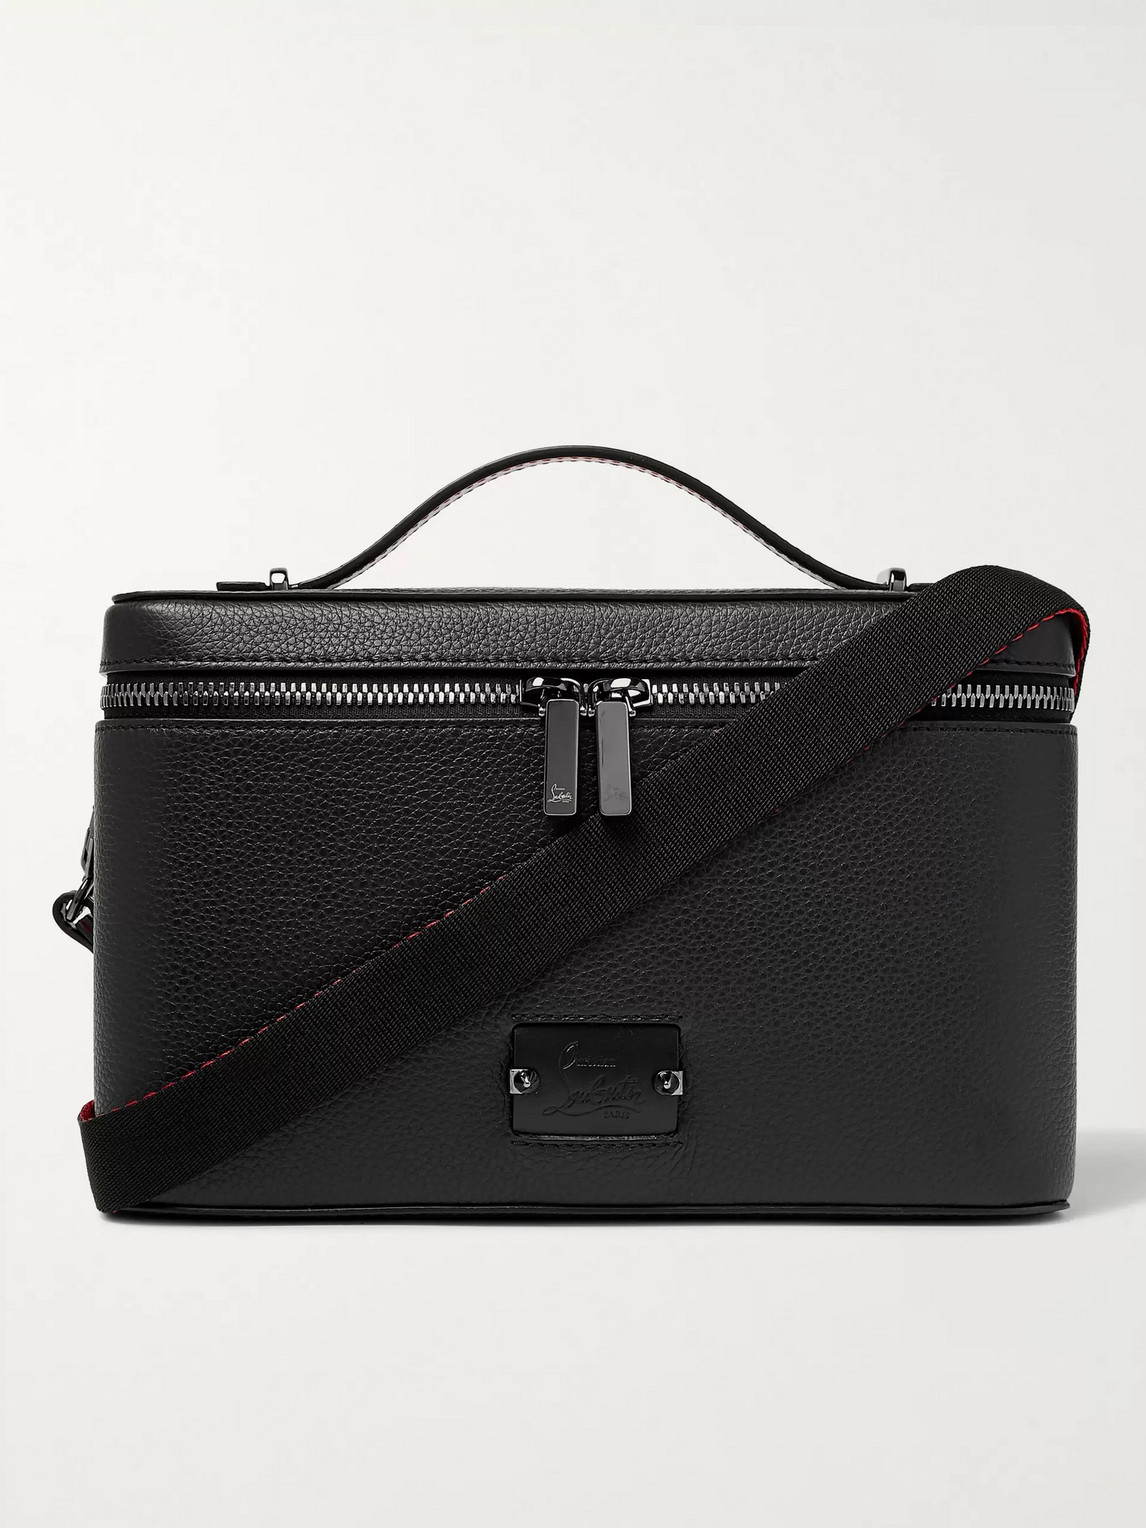 Christian Louboutin Full-grain Leather Messenger Bag In Black